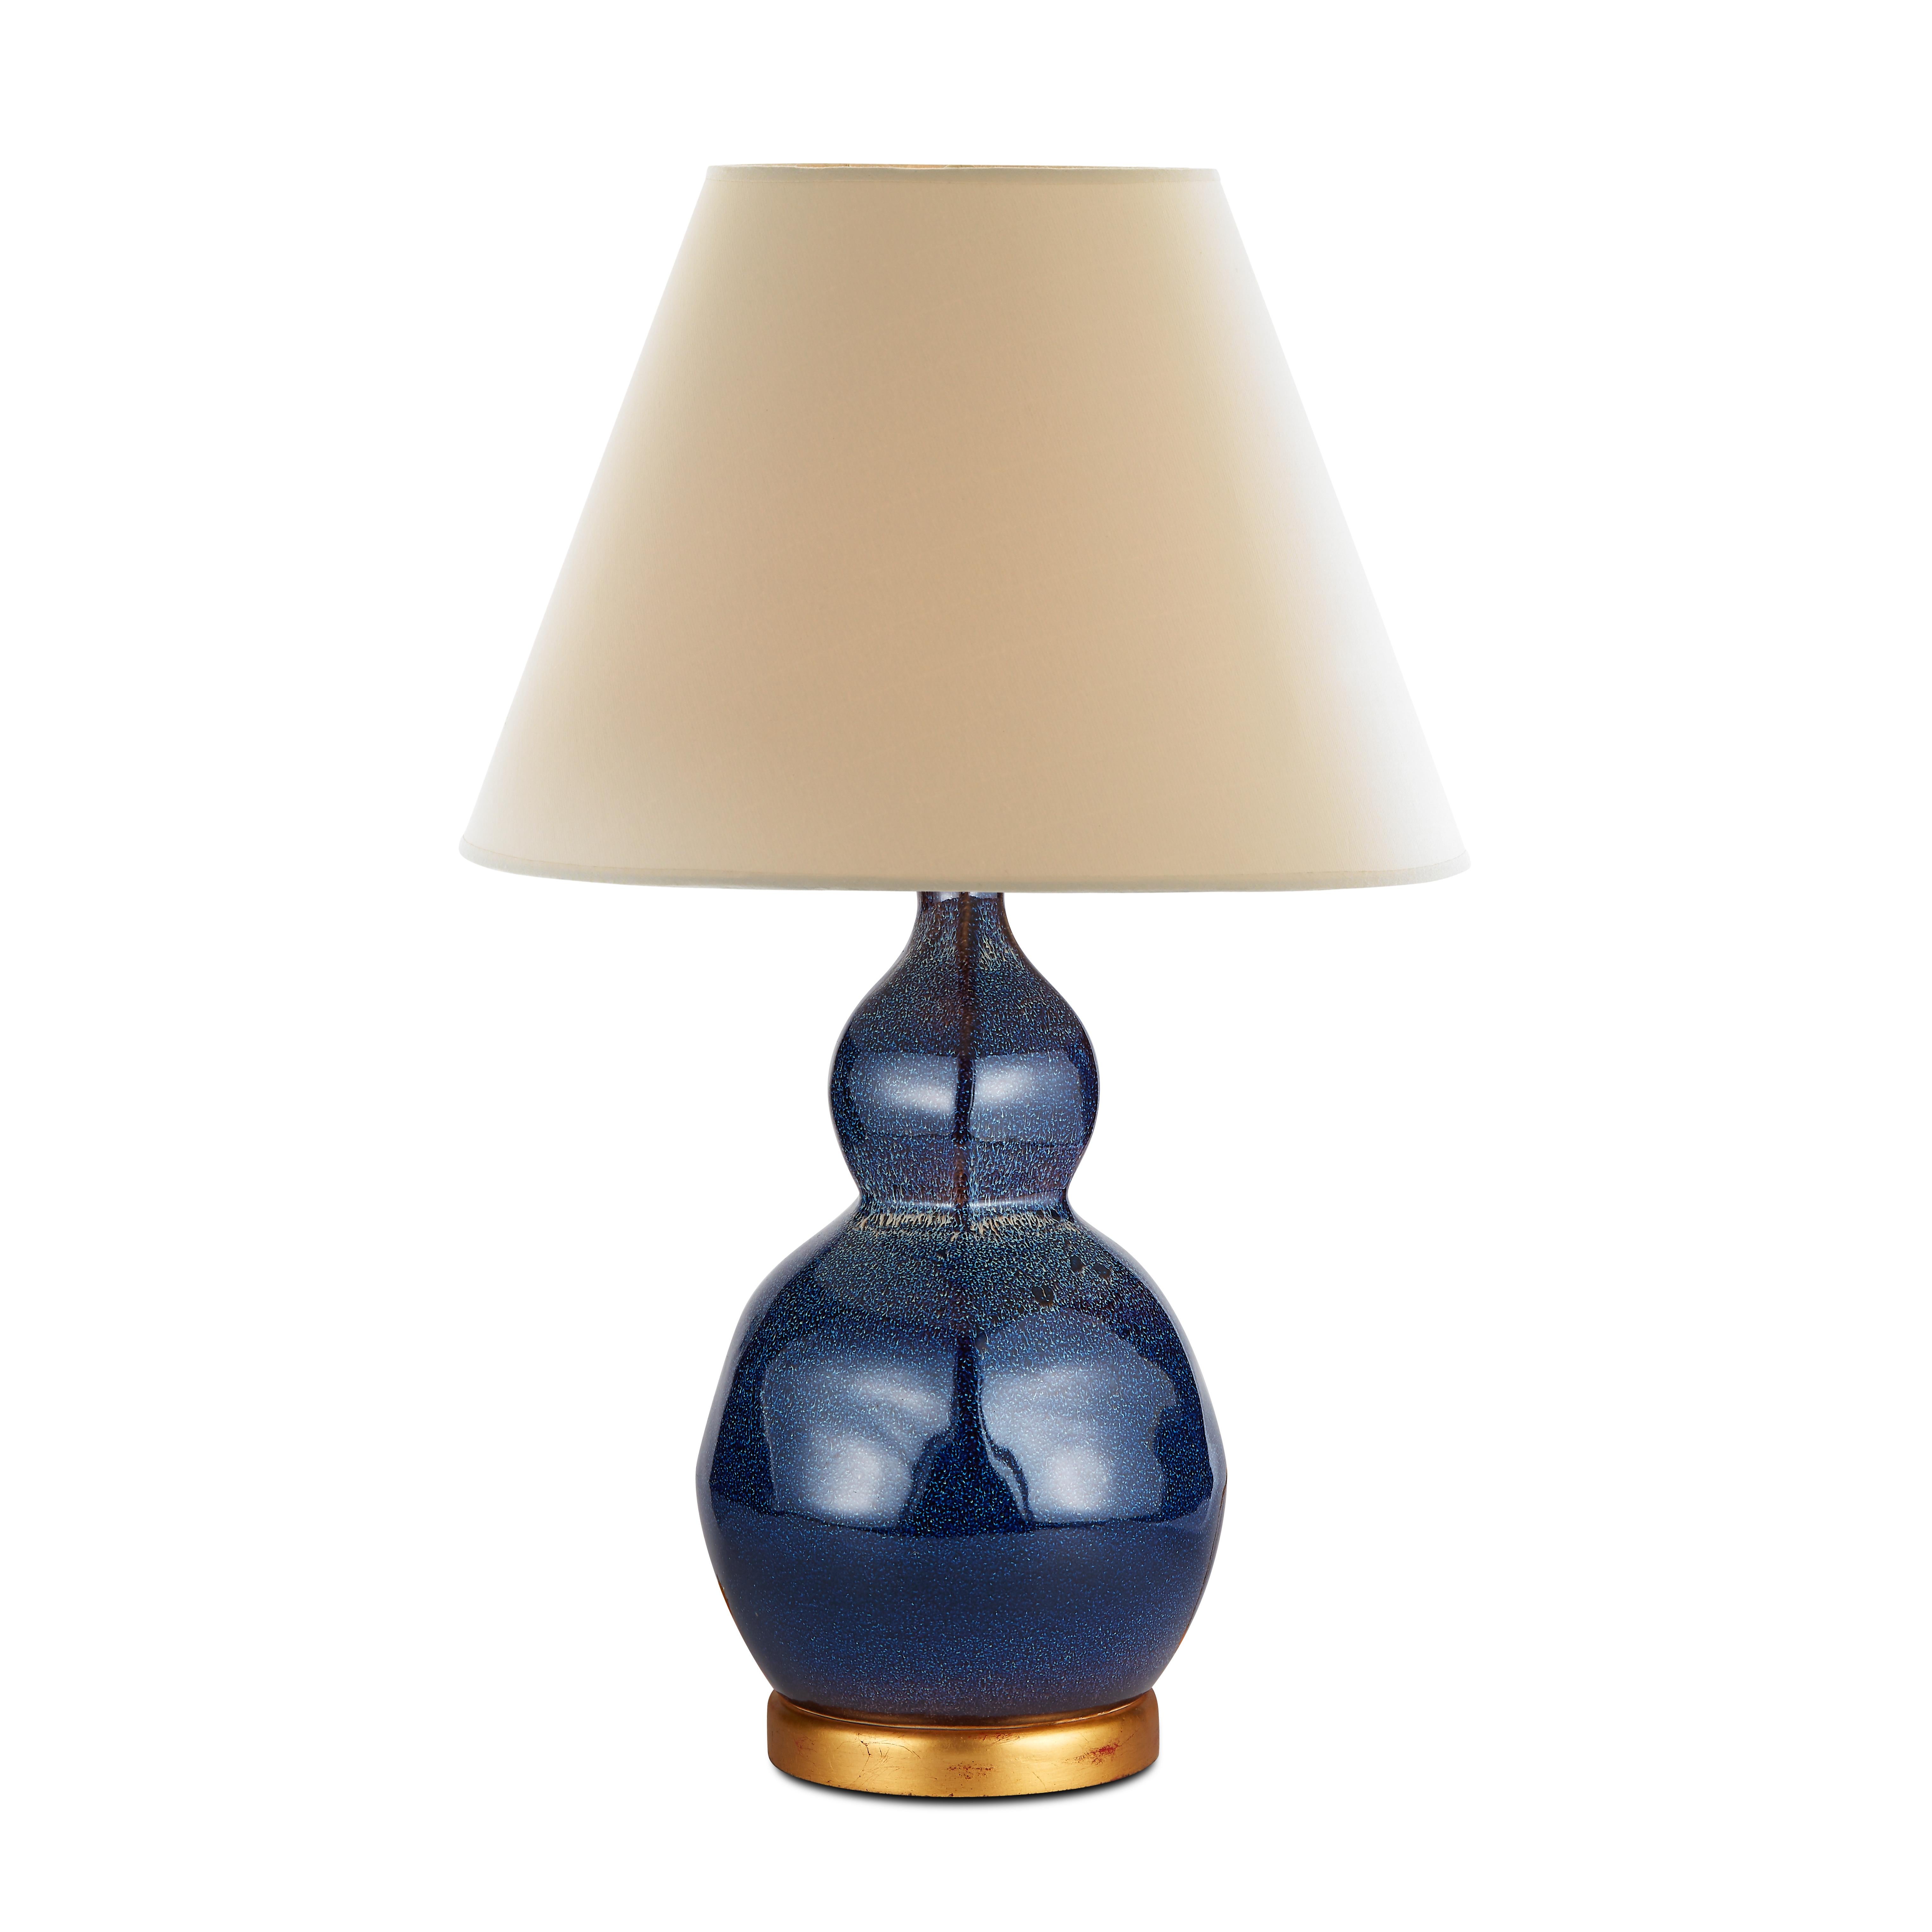 Die mitternachtsblaue Glasur unserer Small Speckled Lamp zeigt den Einfluss der traditionellen Jun Ware. Eine dicke blaue Glasur mit kleinen weißen Punkten bedeckt die sanft facettierte, zweischliffige Form der Lampe, die auf einem glatten